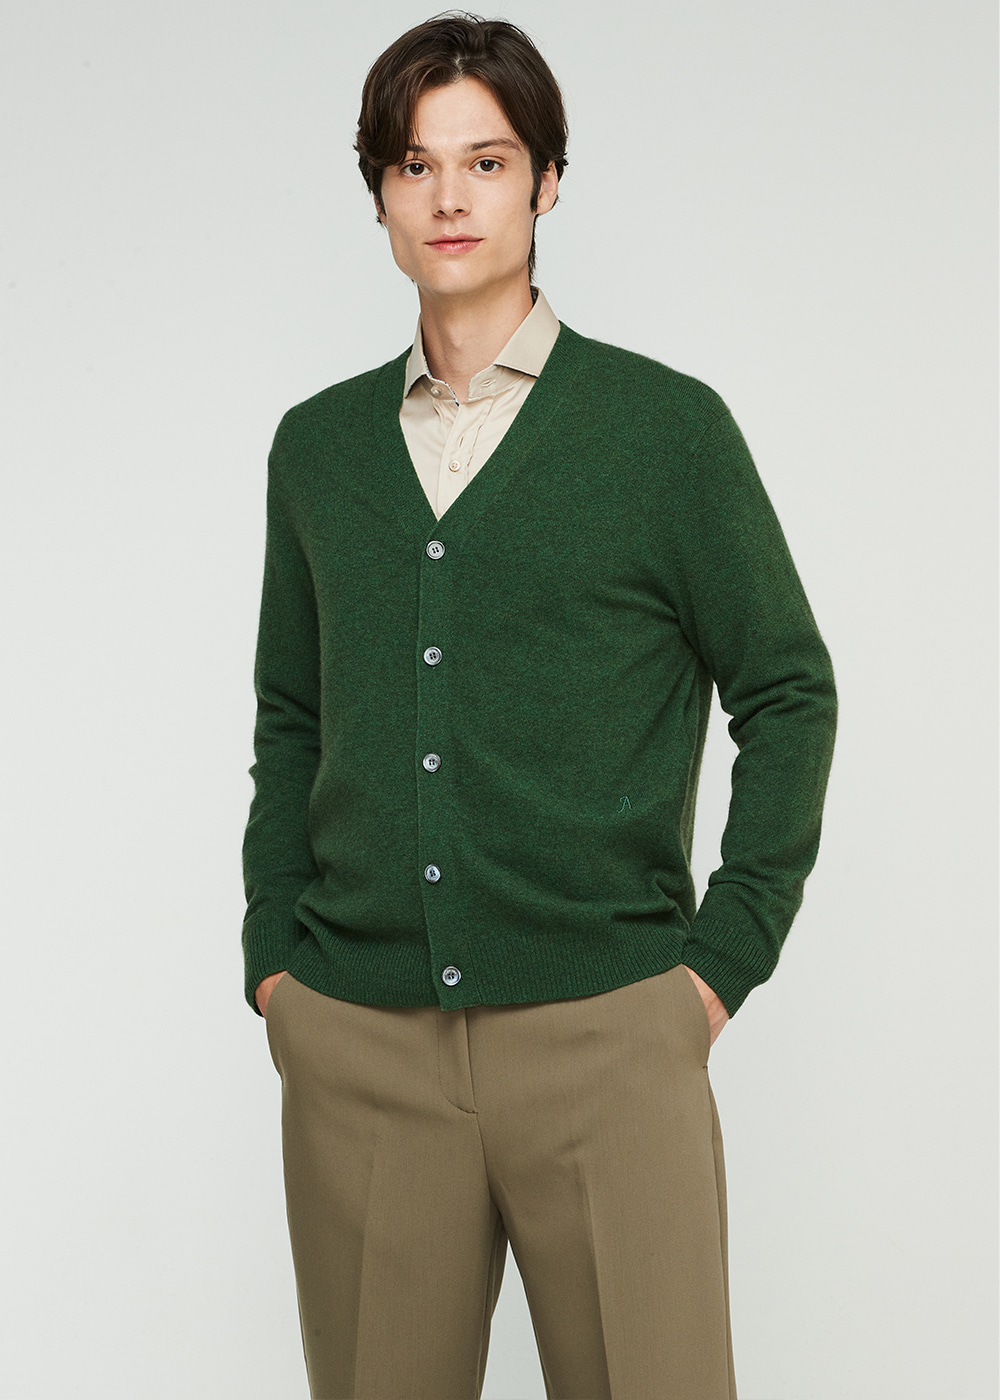 A LOGO smart fit cardigan (grass green)  20%